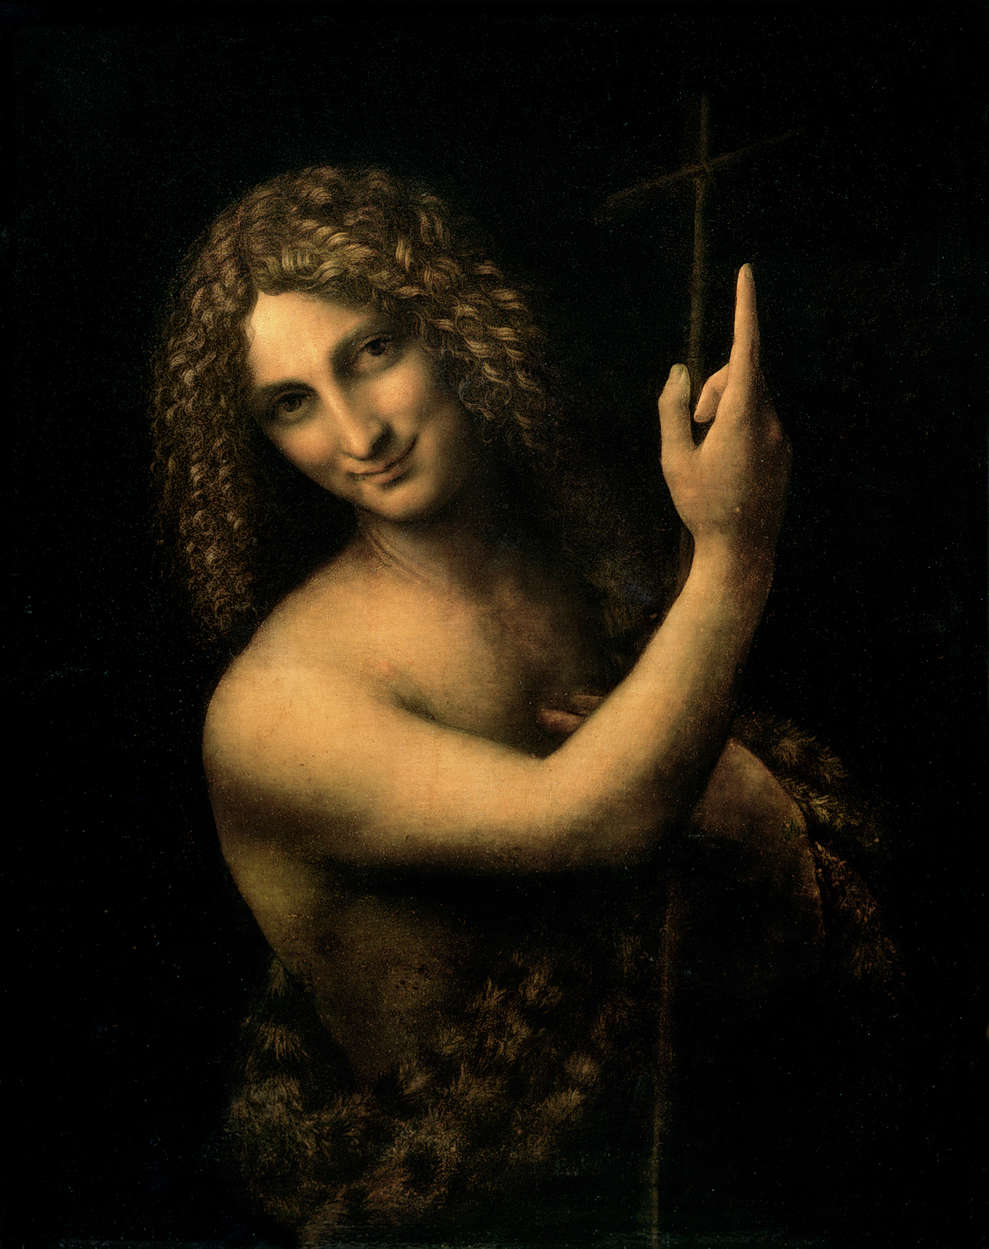             Mural "Juan el Bautista" de Leonardo da Vinci
        